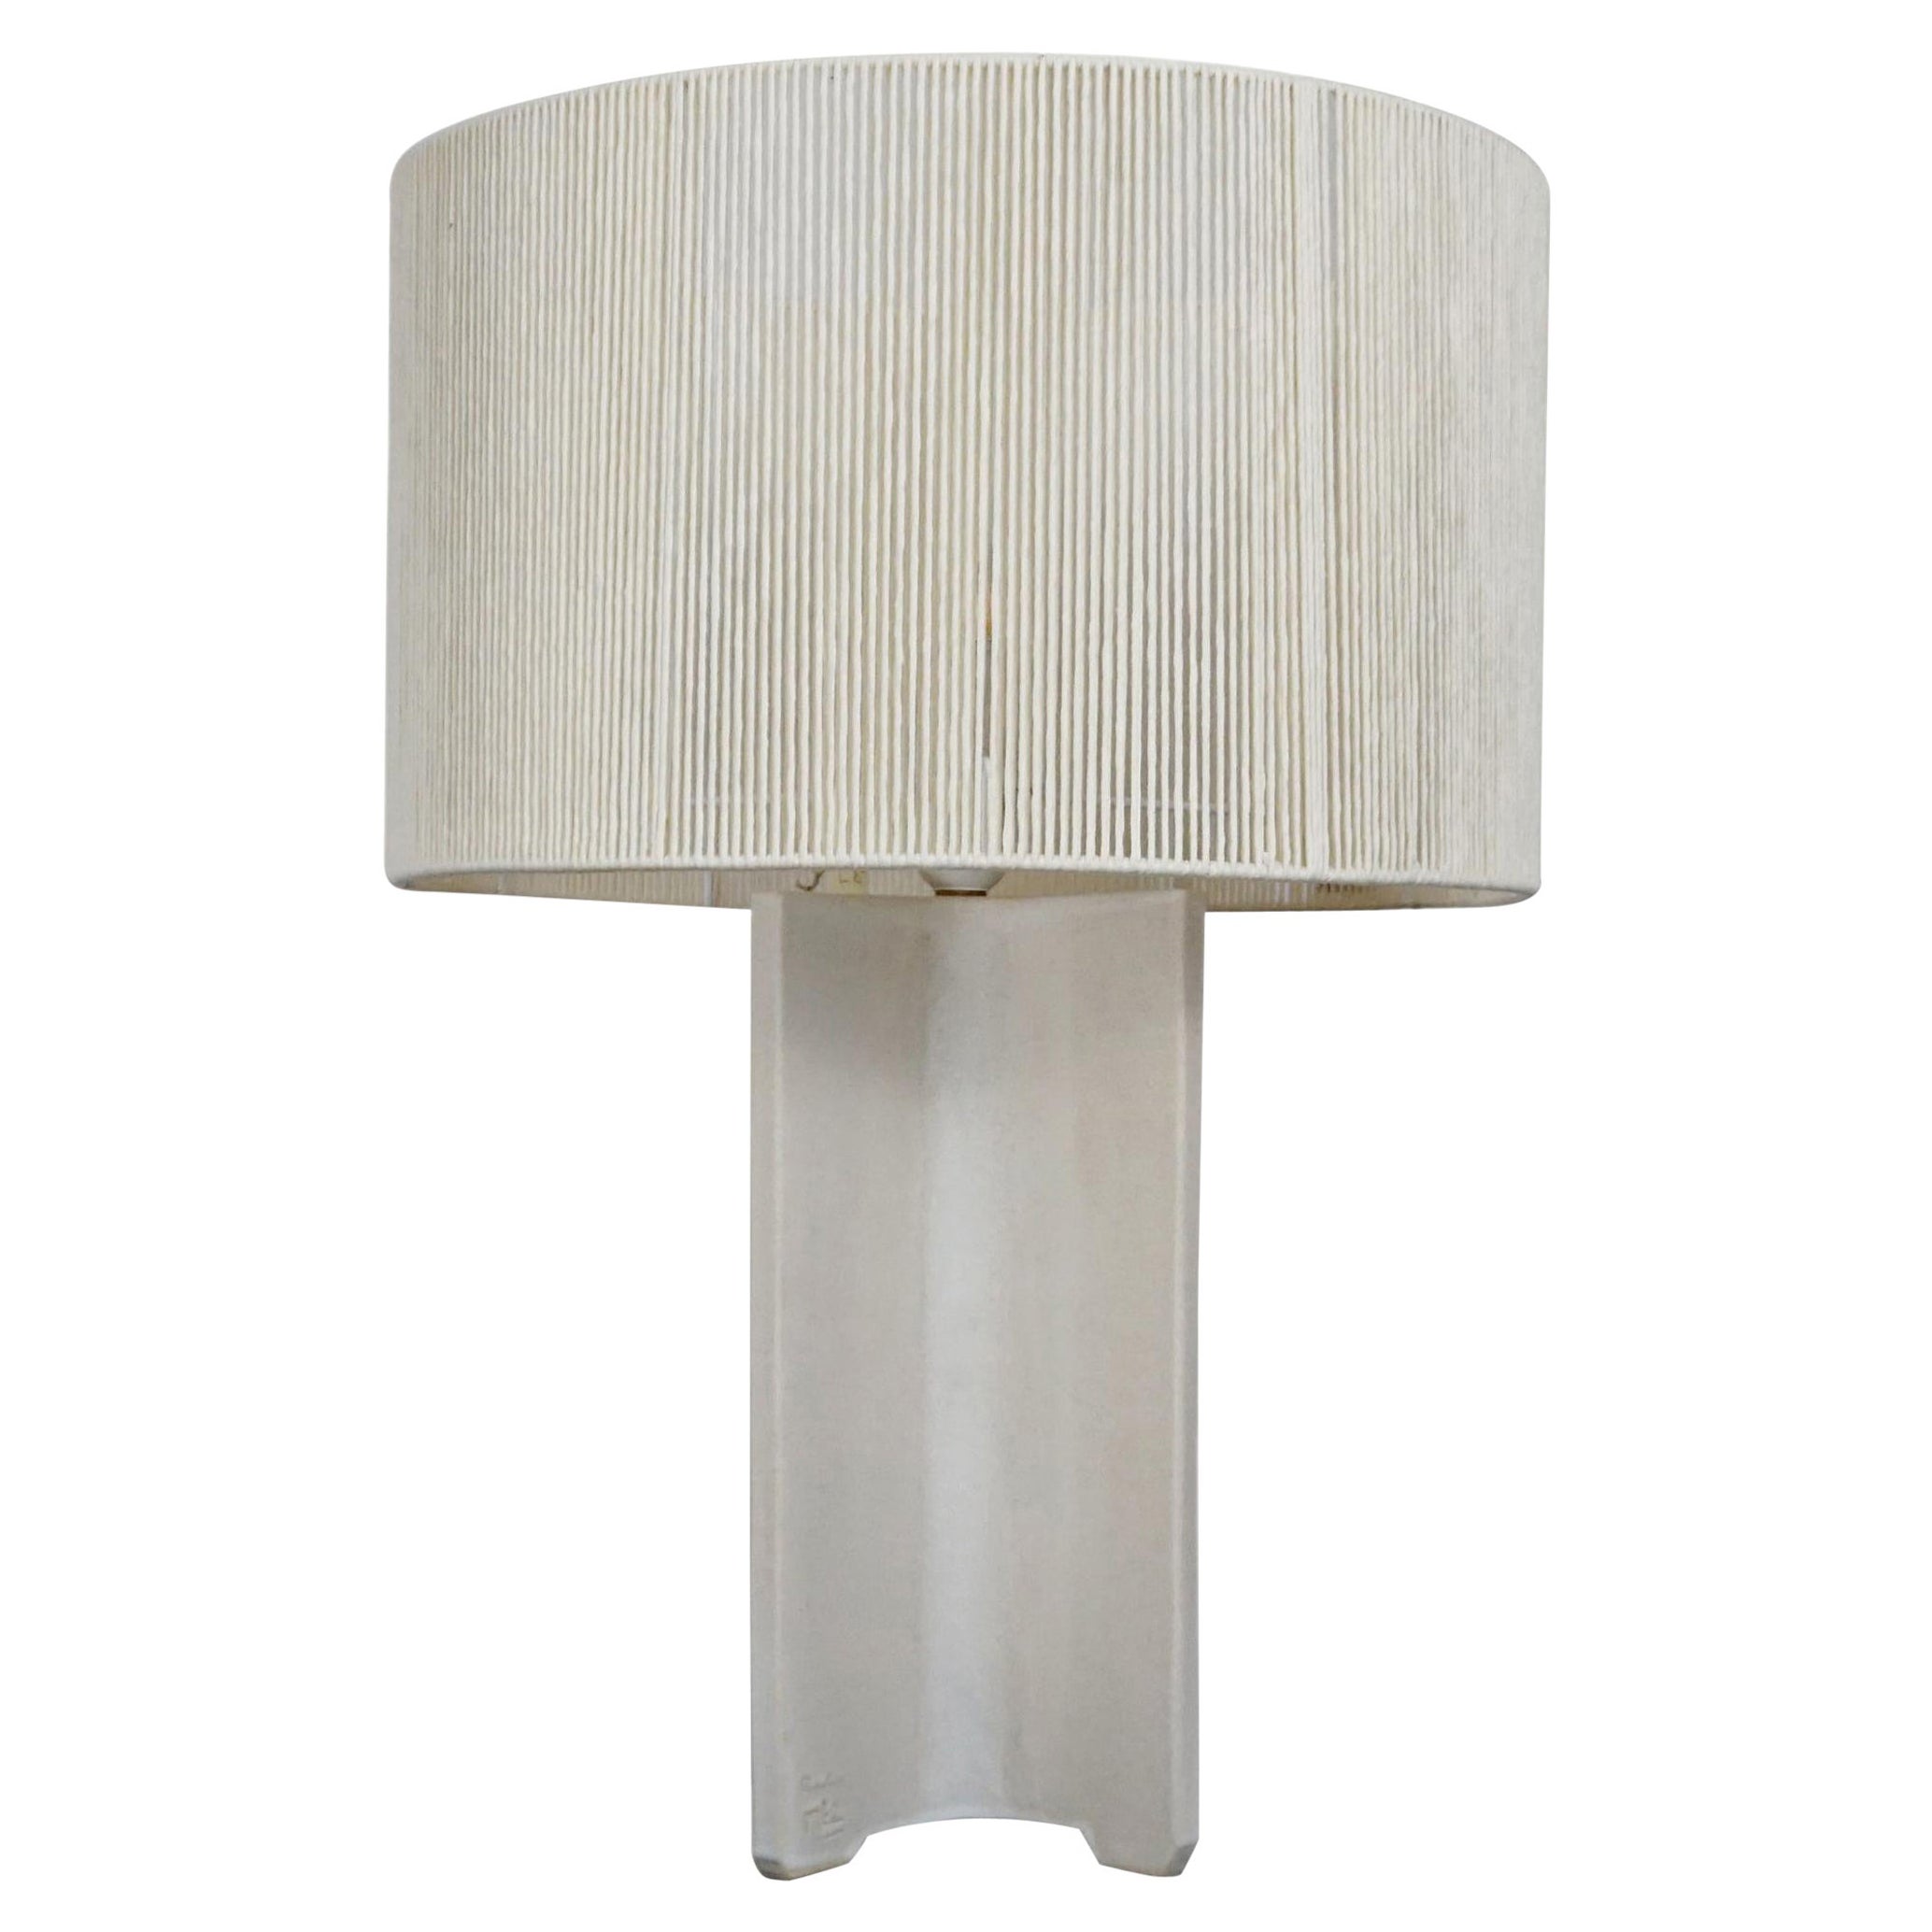 Lampe de bureau géométrique contemporaine faite à la main en céramique blanche, minimaliste